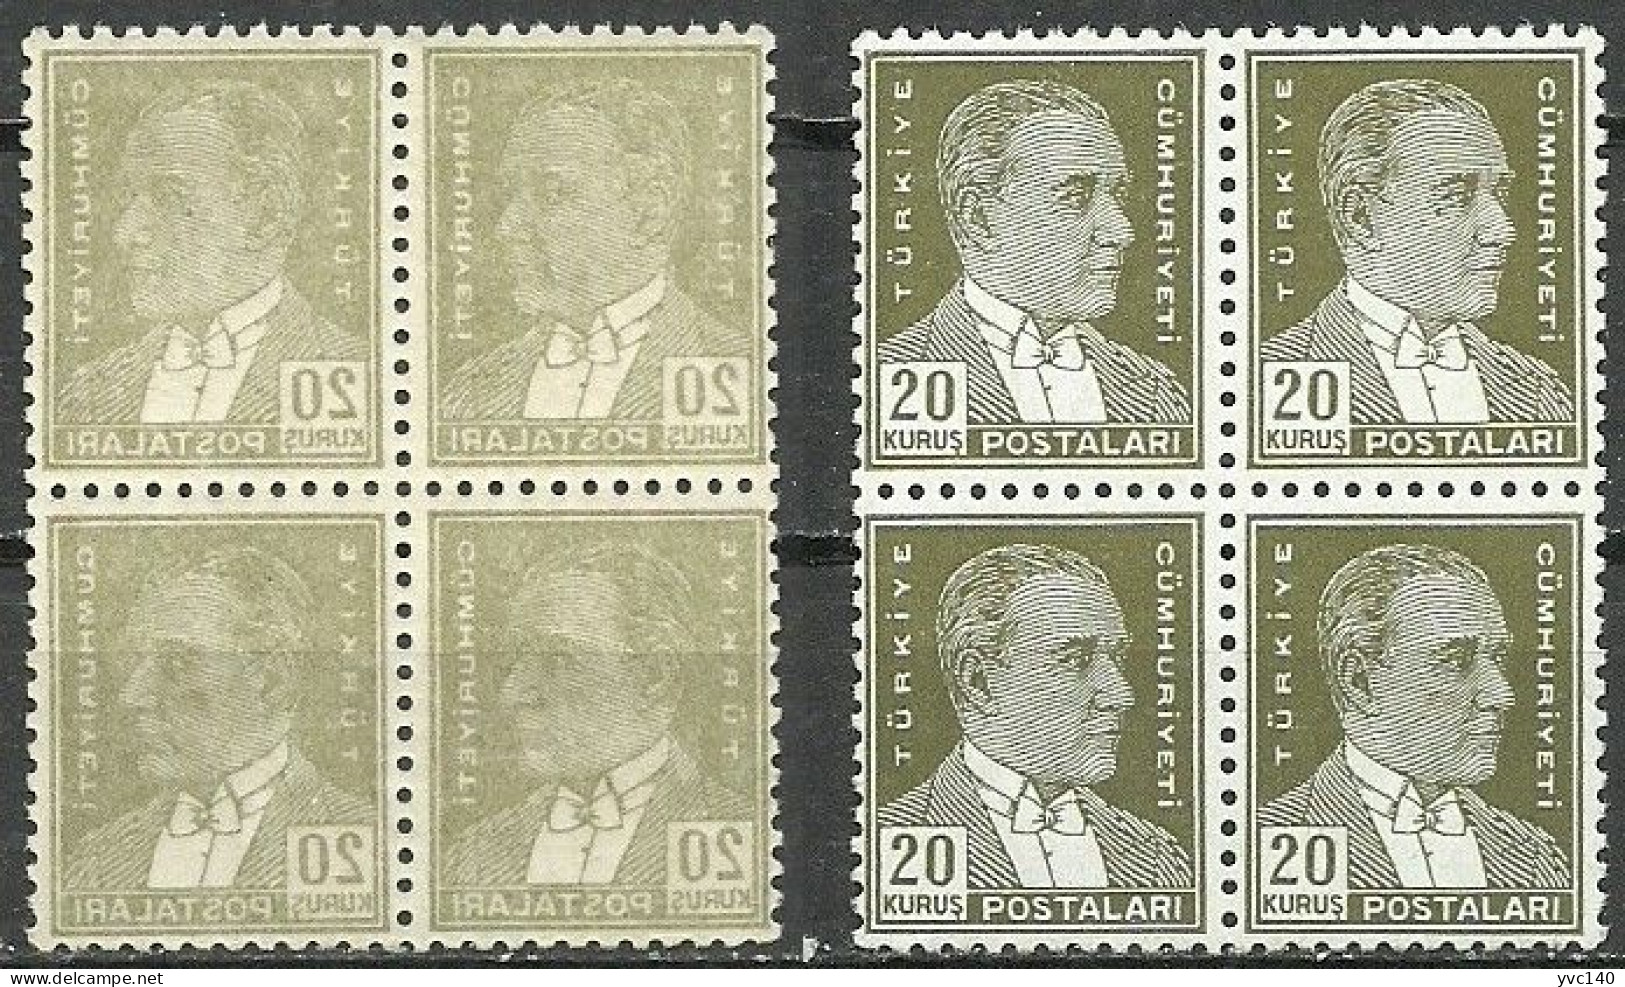 Turkey; 1933 2nd Ataturk Issue Stamp 20 K. "Abklatsch" ERROR (Block Of 4) - Unused Stamps